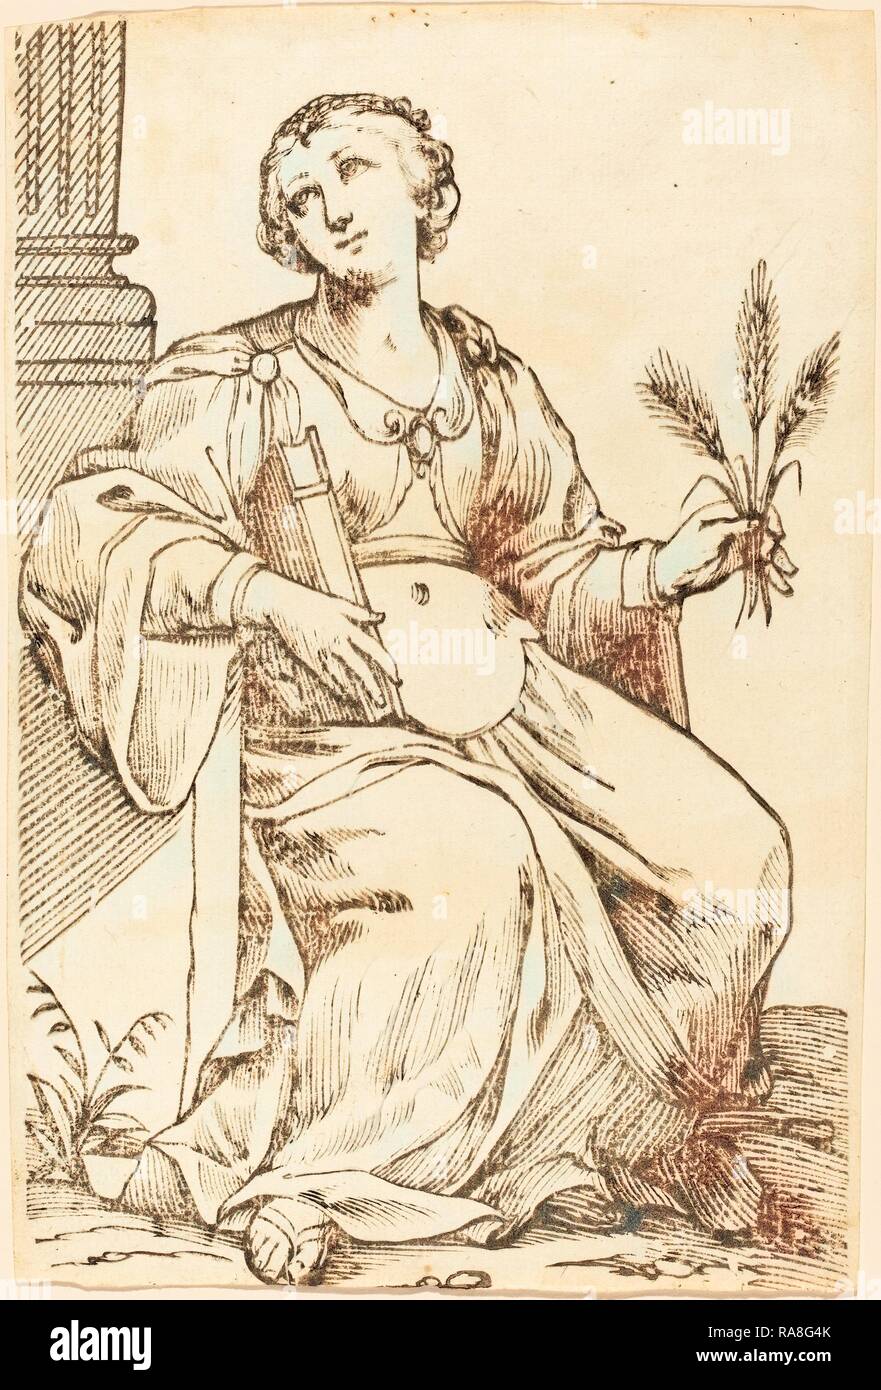 Jacques Stella (Français, 1596 - 1657), Sibylla Samia, 1625, gravure sur bois. Repensé par Gibon. L'art classique avec un style moderne repensé Banque D'Images